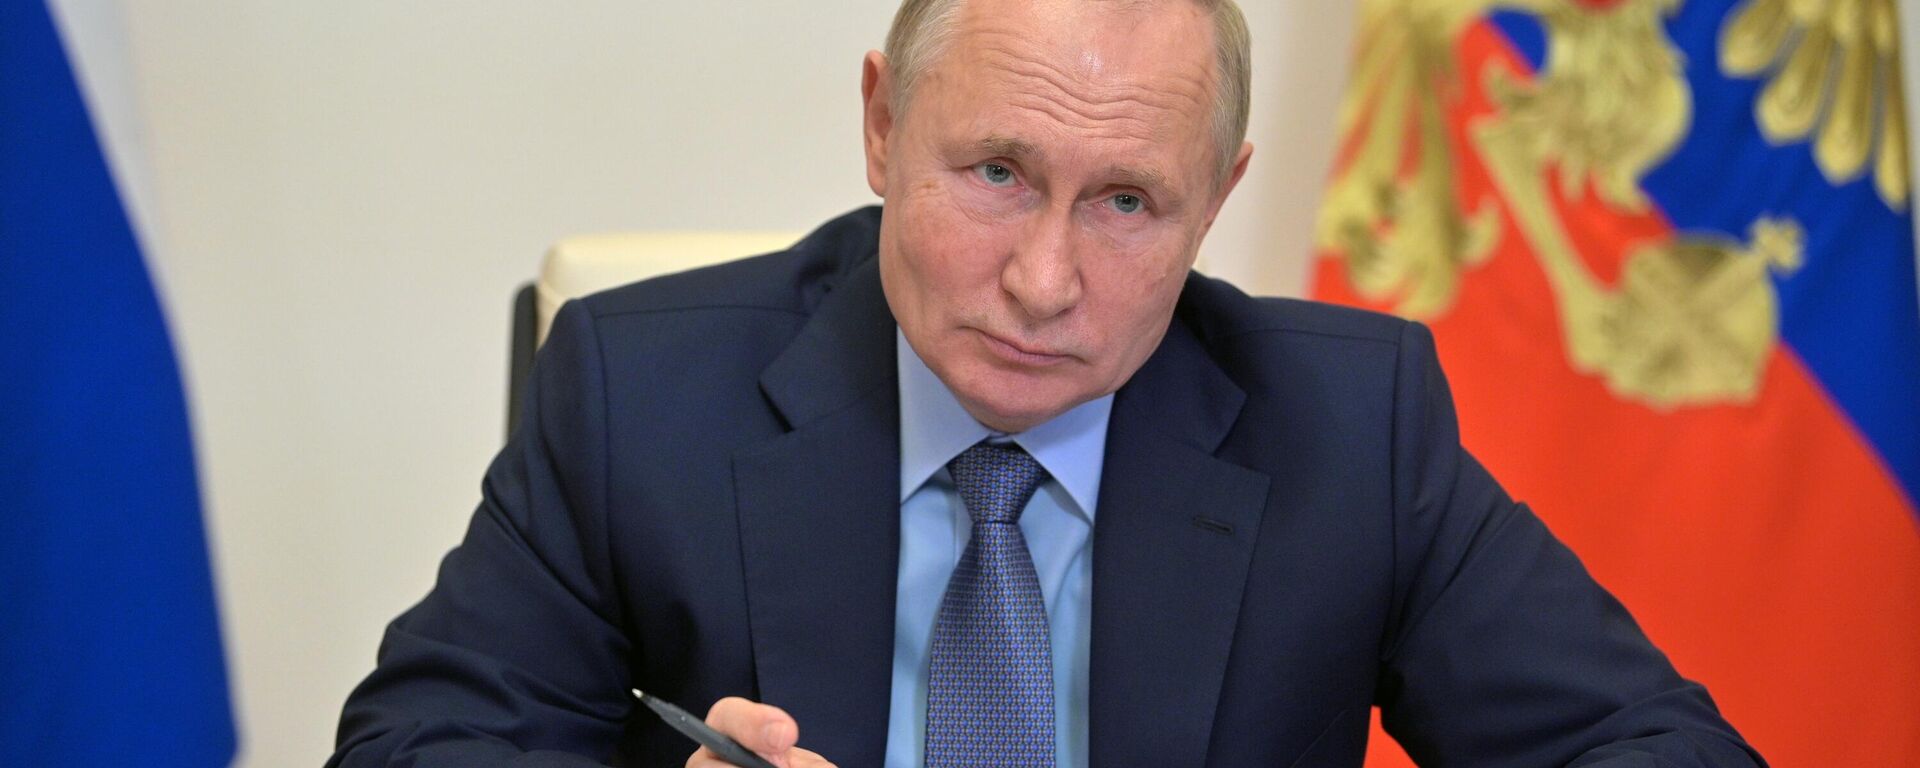 Президент России Владимир Путин - Sputnik Беларусь, 1920, 08.12.2021